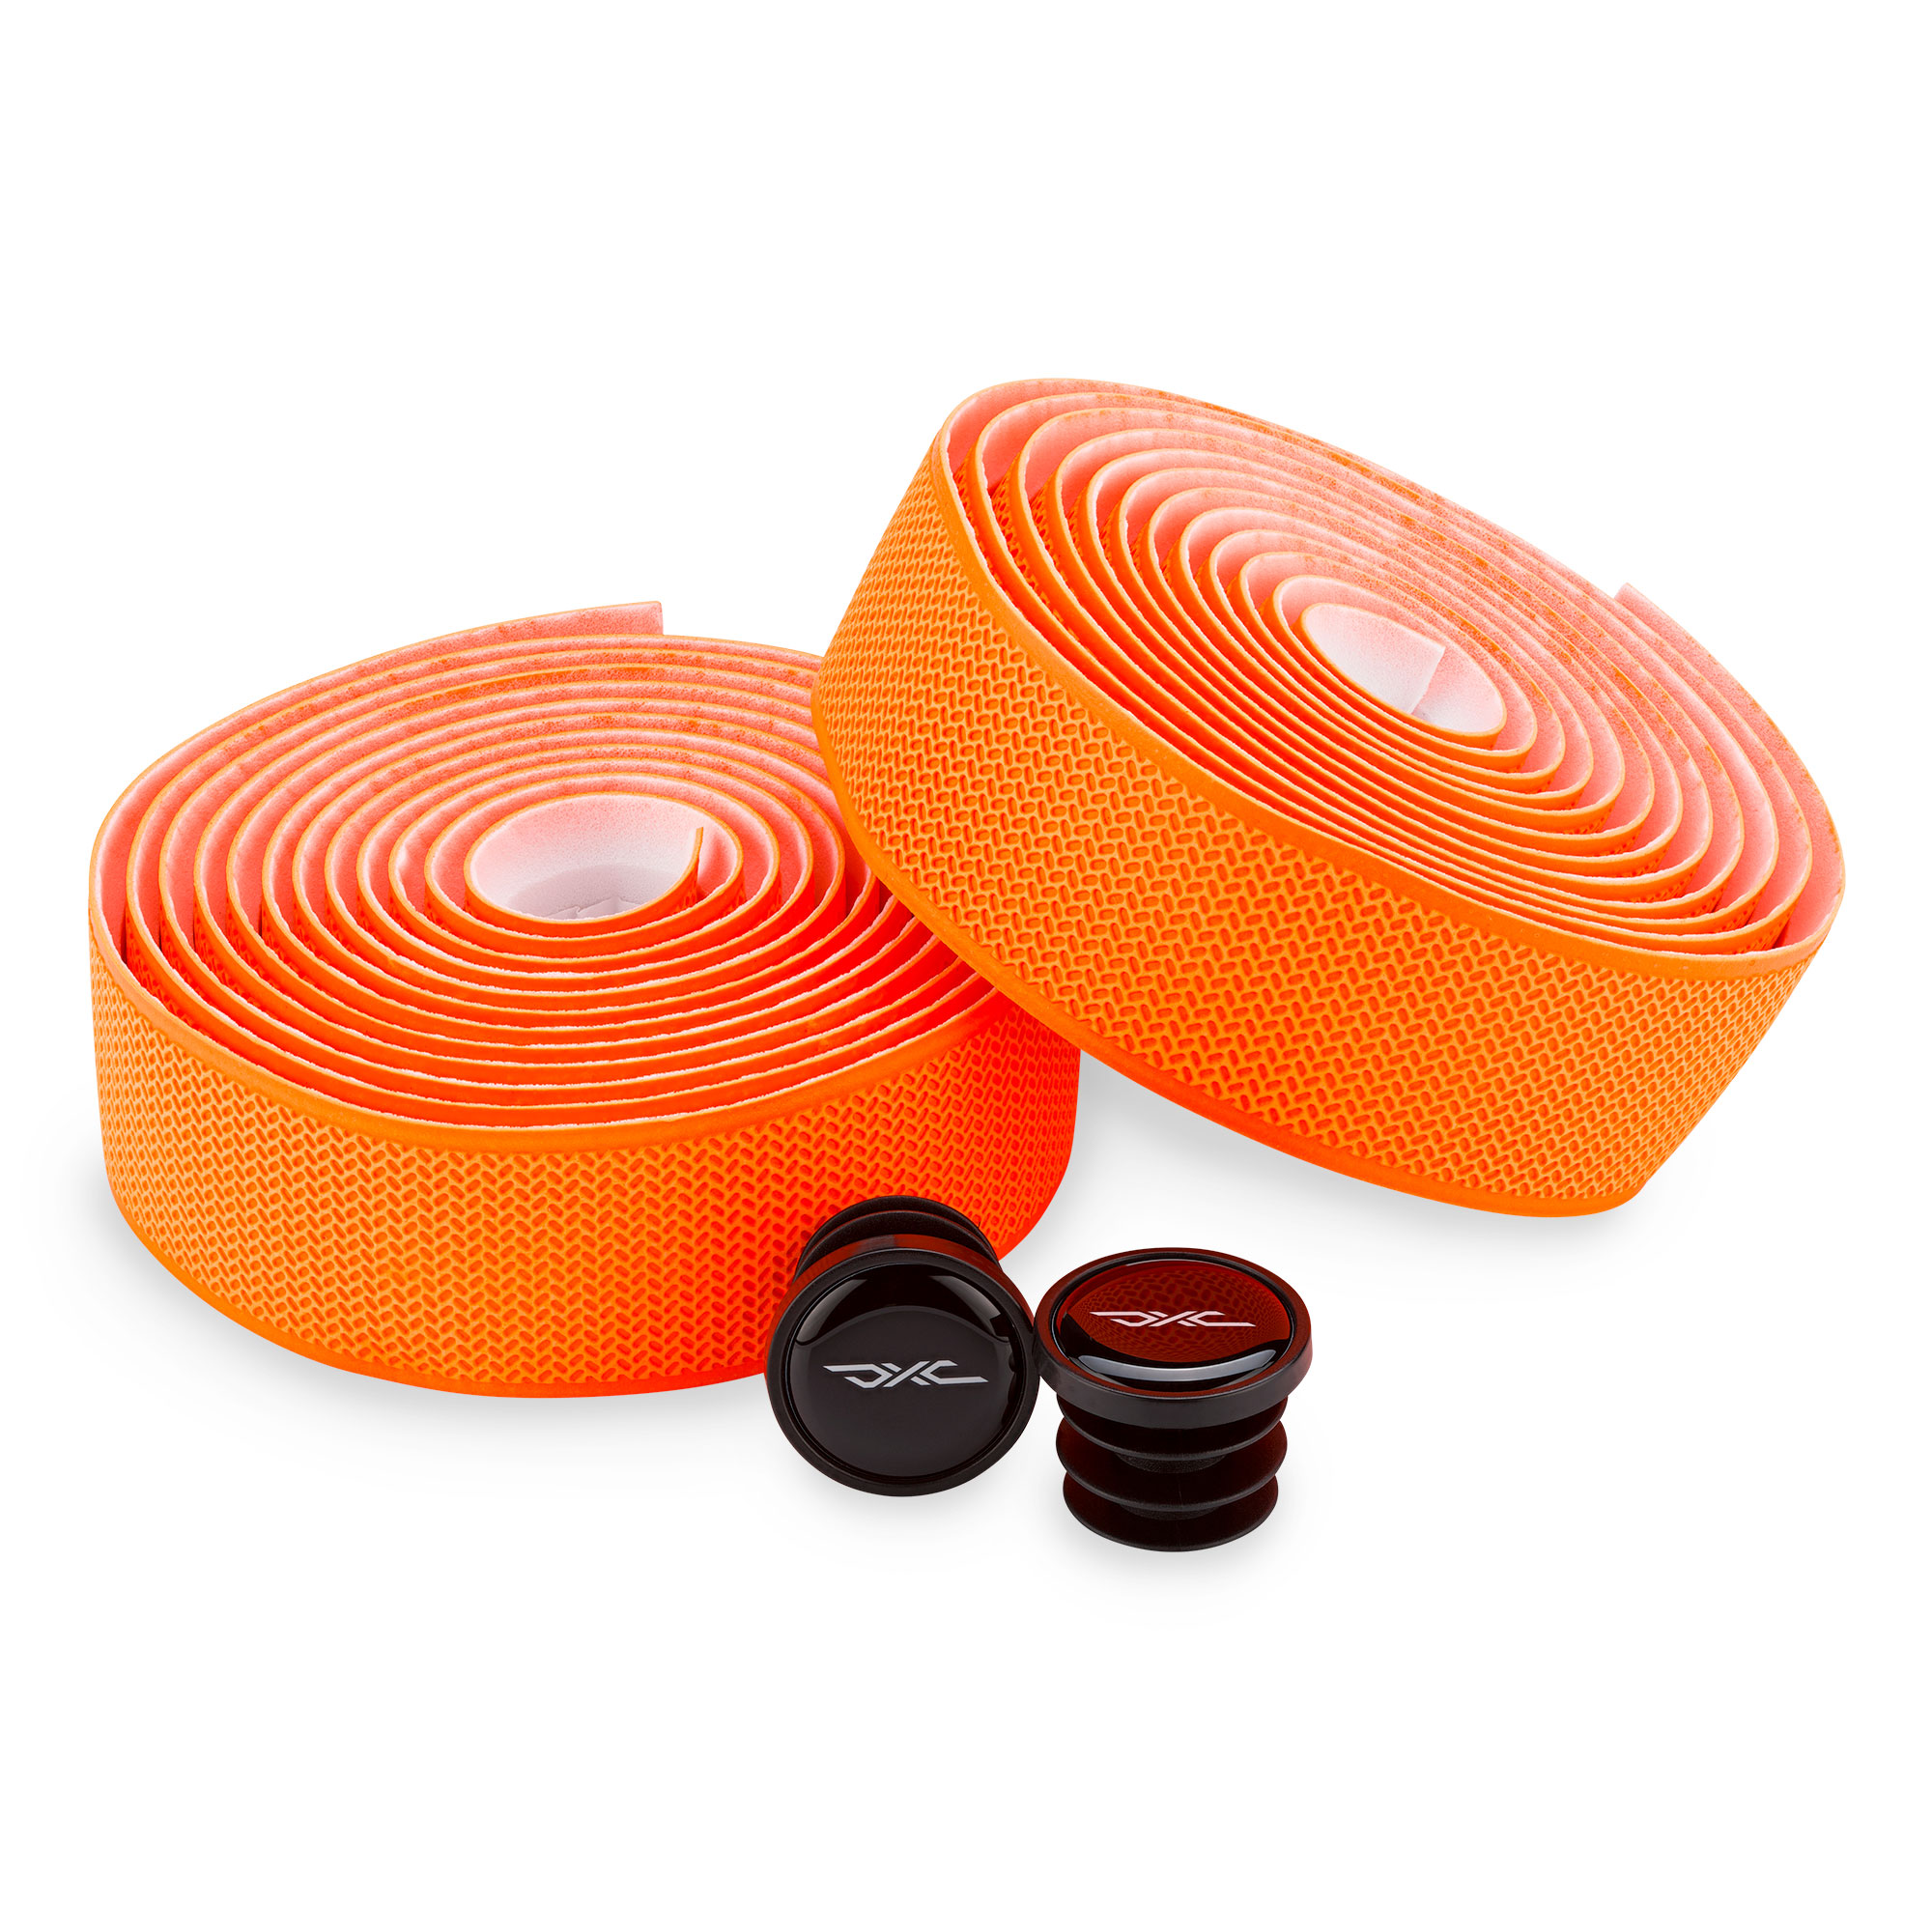 Productfoto van DXC BT Stuurlint - Embossed - Neon Orange Snake